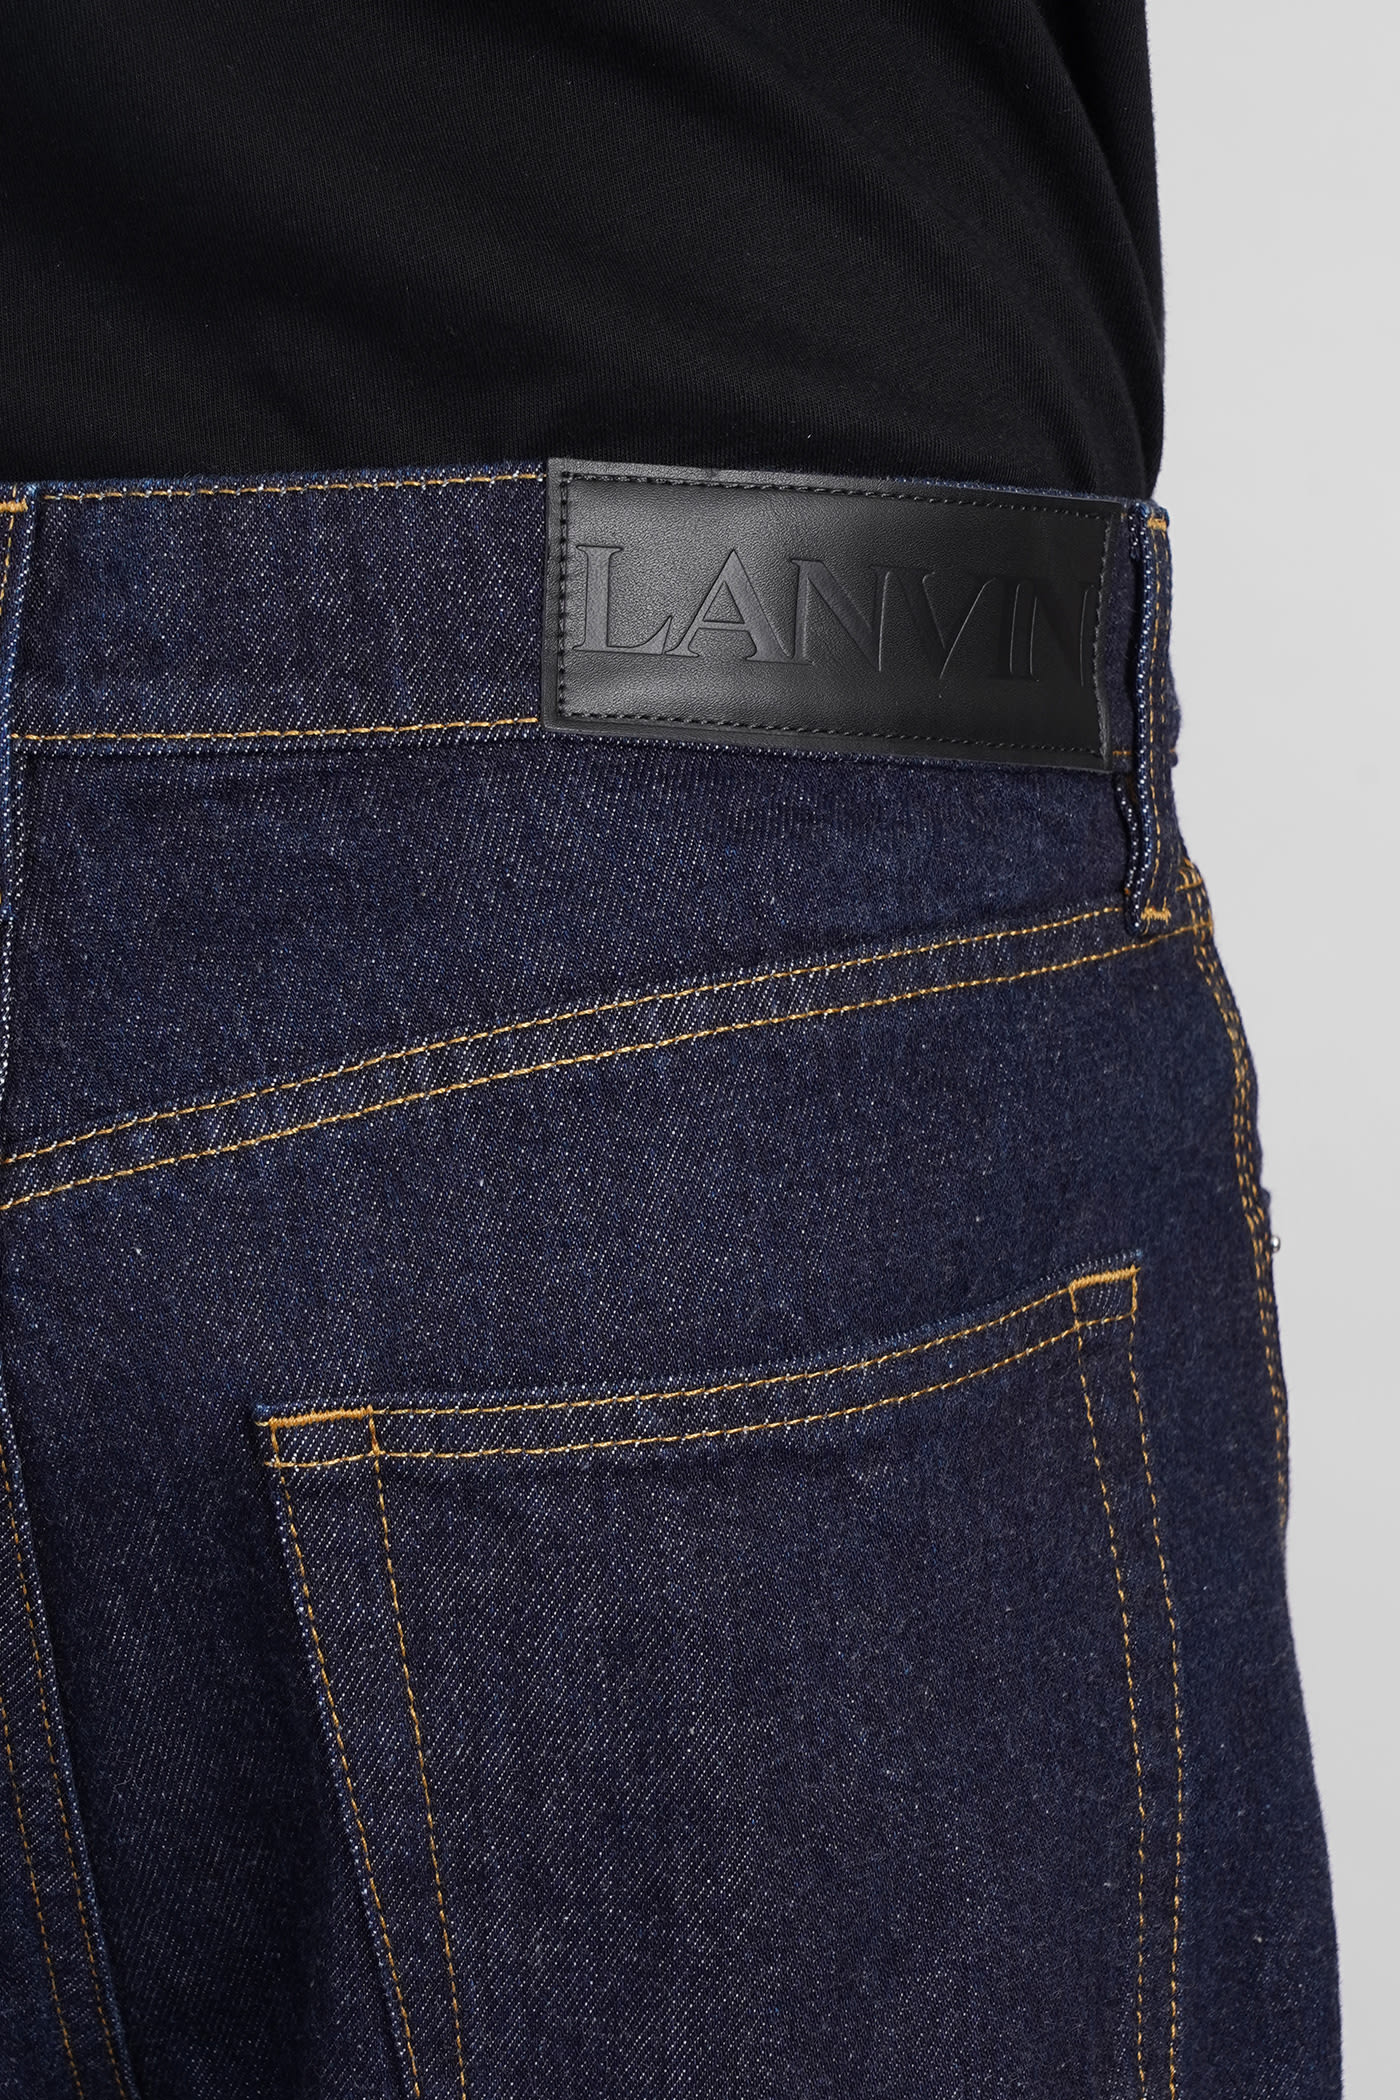 Shop Lanvin Jeans In Blue Cotton